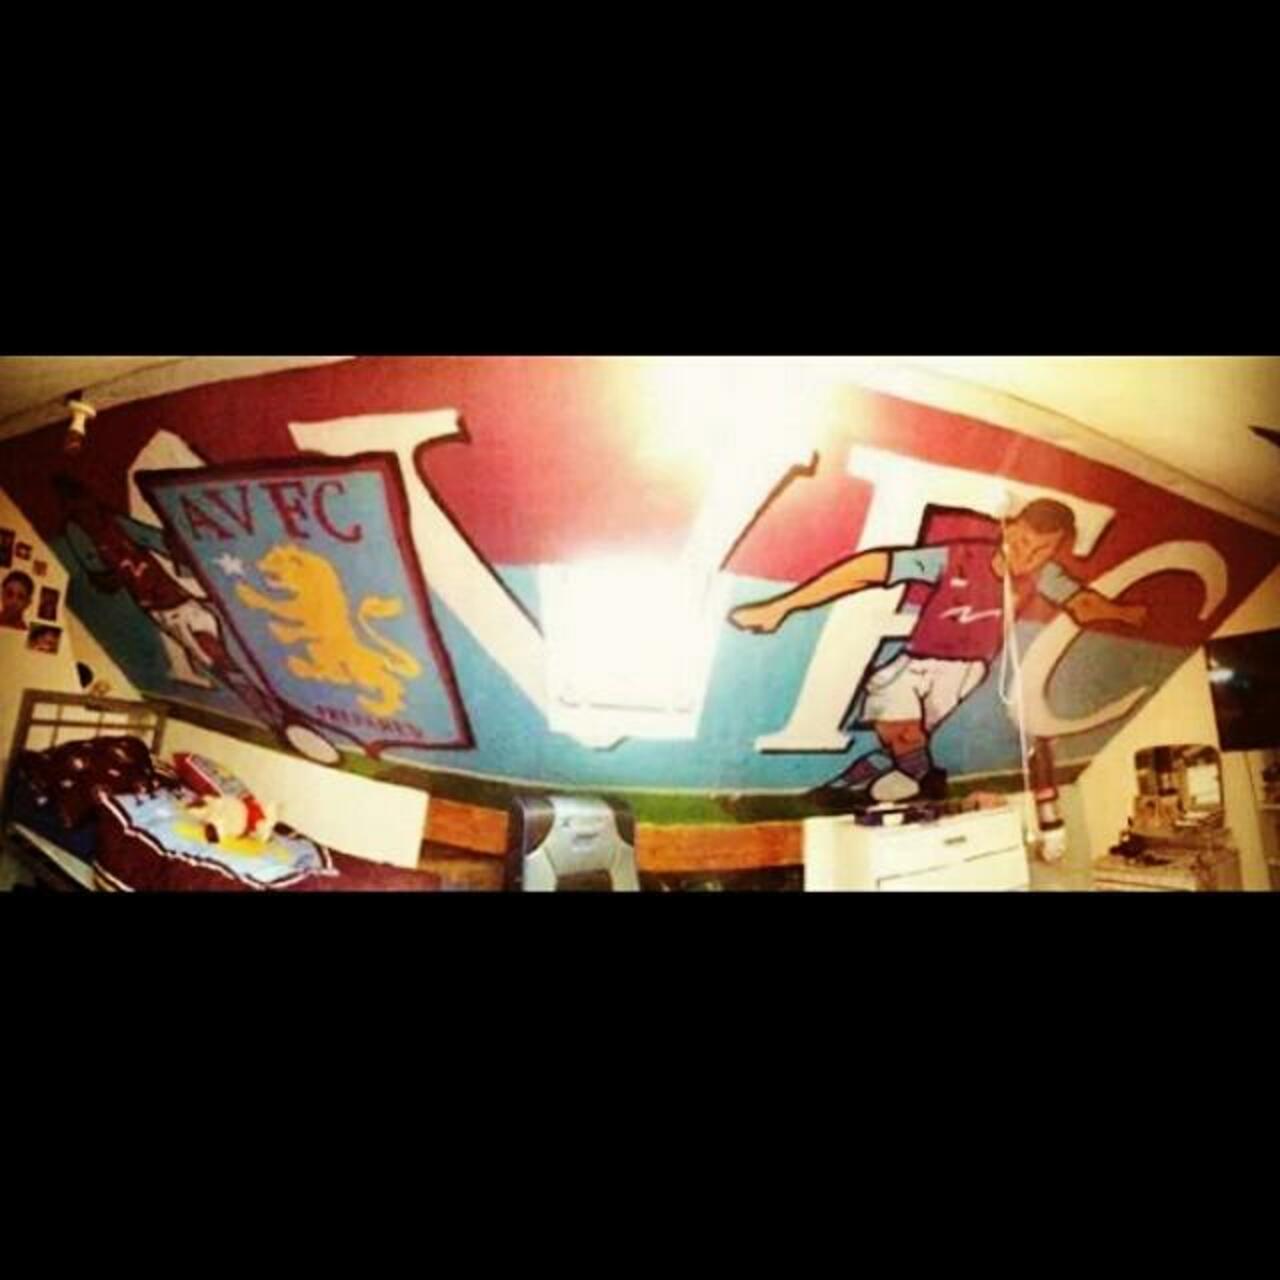 Aston Villa themed bedroom #graffiti #graffitibox #kidsbedroom #bedroom #mural #artwork #art #football #footballers… http://t.co/Ghq2NYFxhP